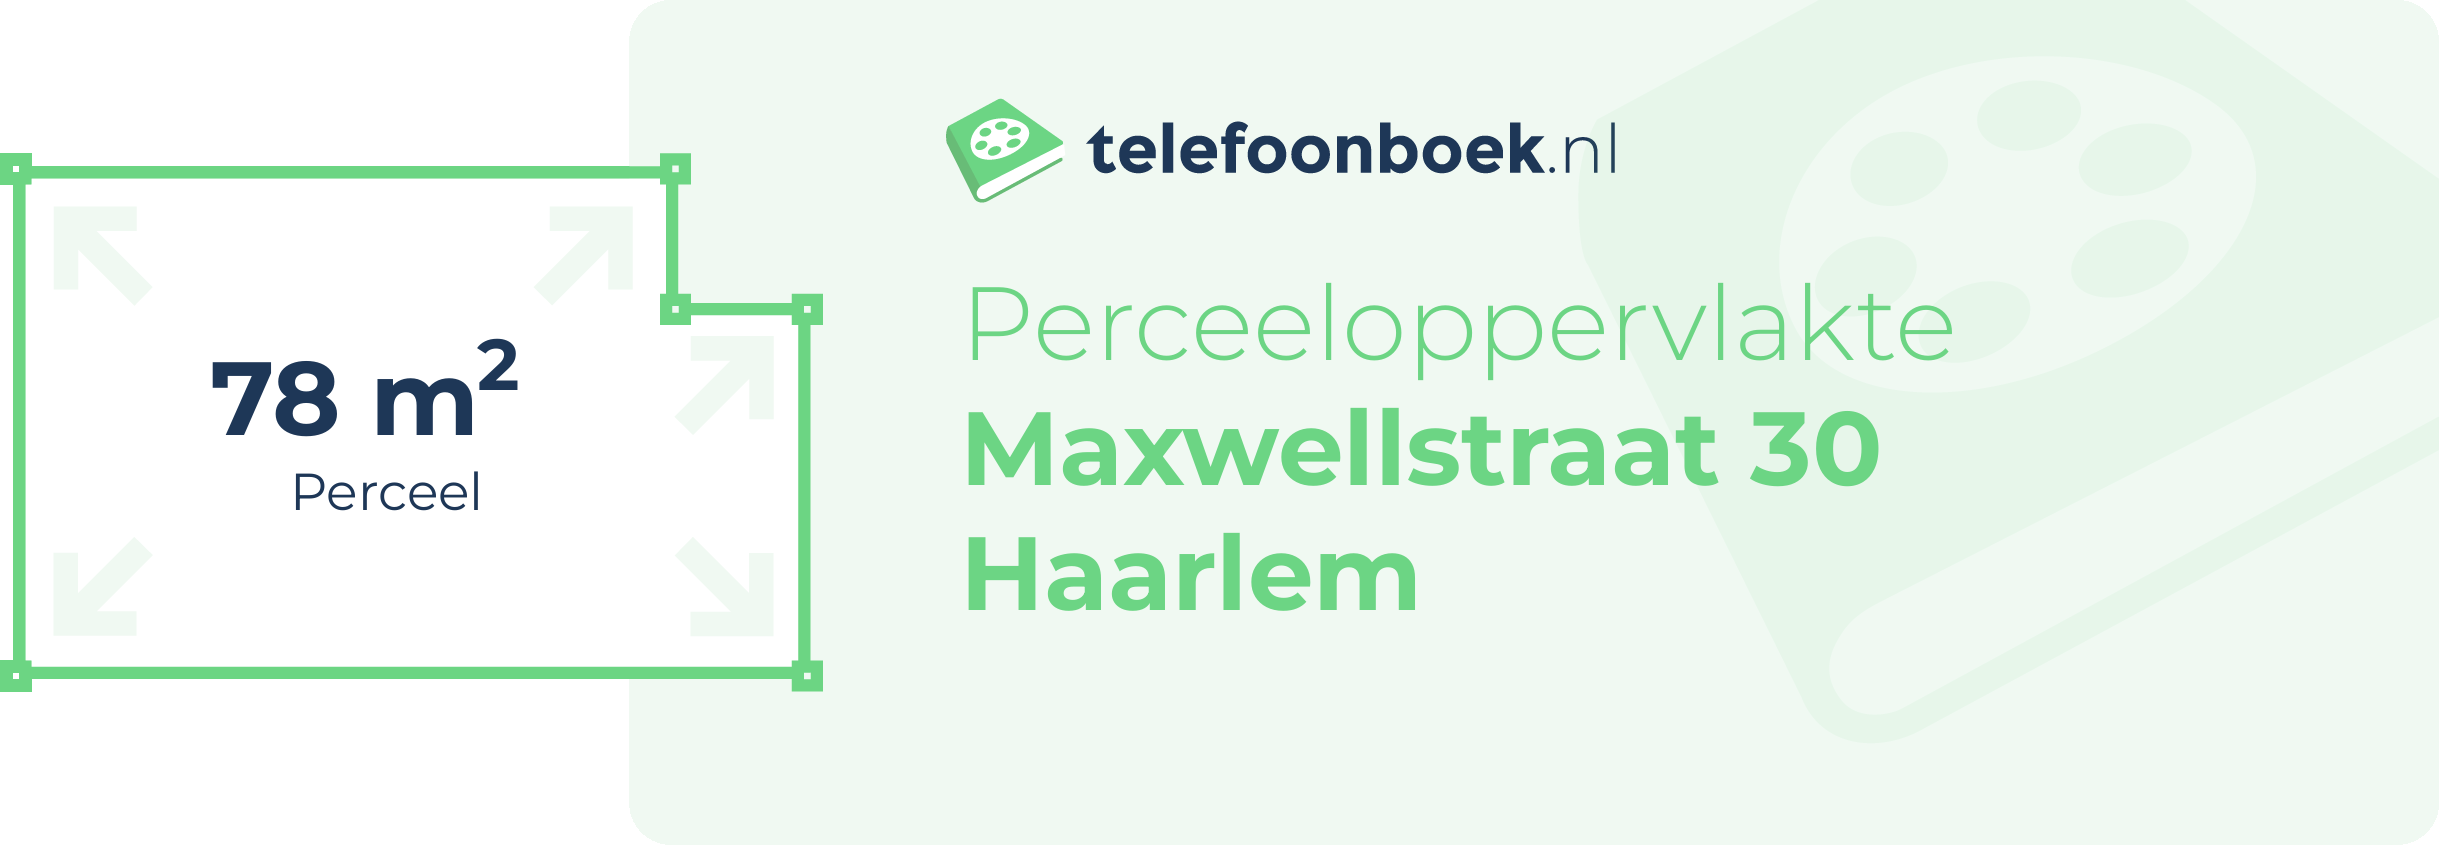 Perceeloppervlakte Maxwellstraat 30 Haarlem